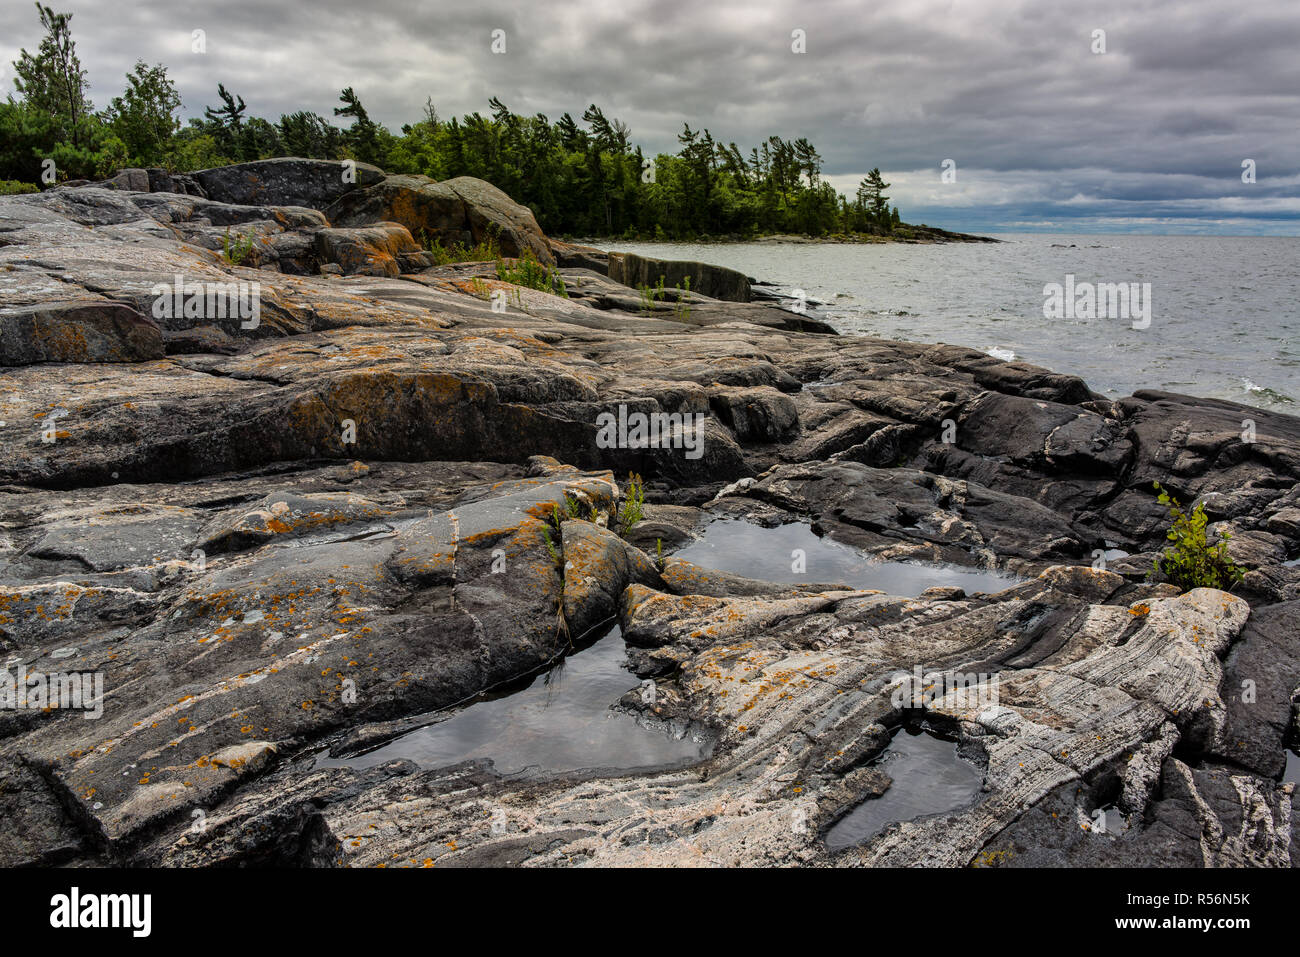 Multibanded les roches de gneiss sur le rivage d'une île parmi les 30 000 de l'archipel de l'île de la baie Georgienne, en Ontario, Canada. 'Bannière' arbres hav Banque D'Images